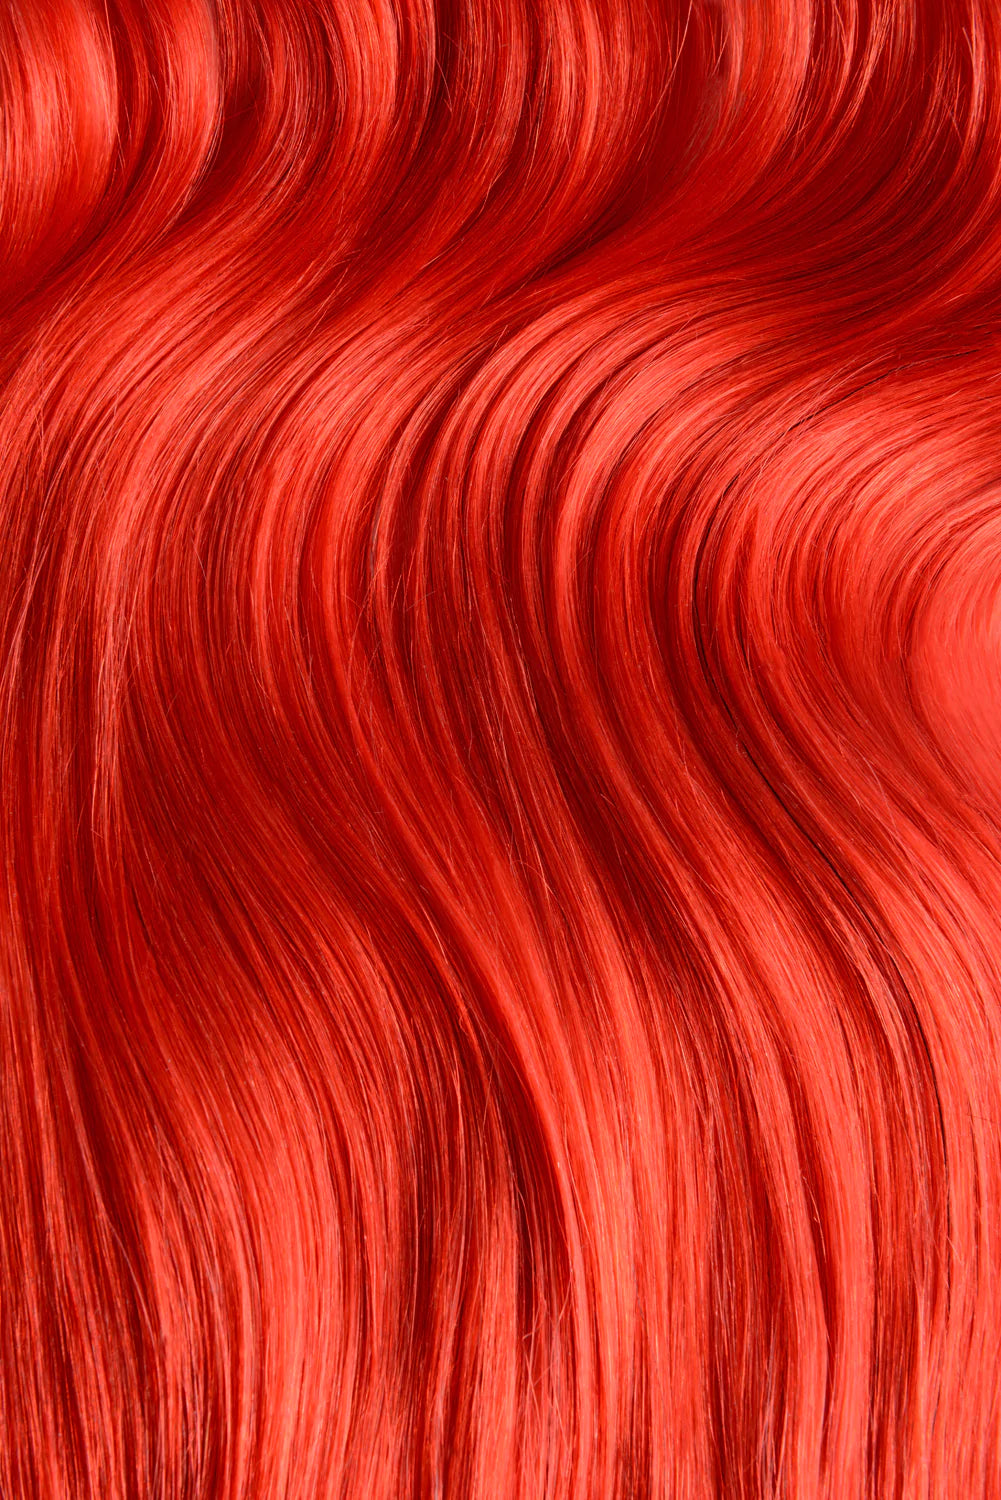 Leuchtend rote Nano-Ring-Haarverlängerungen